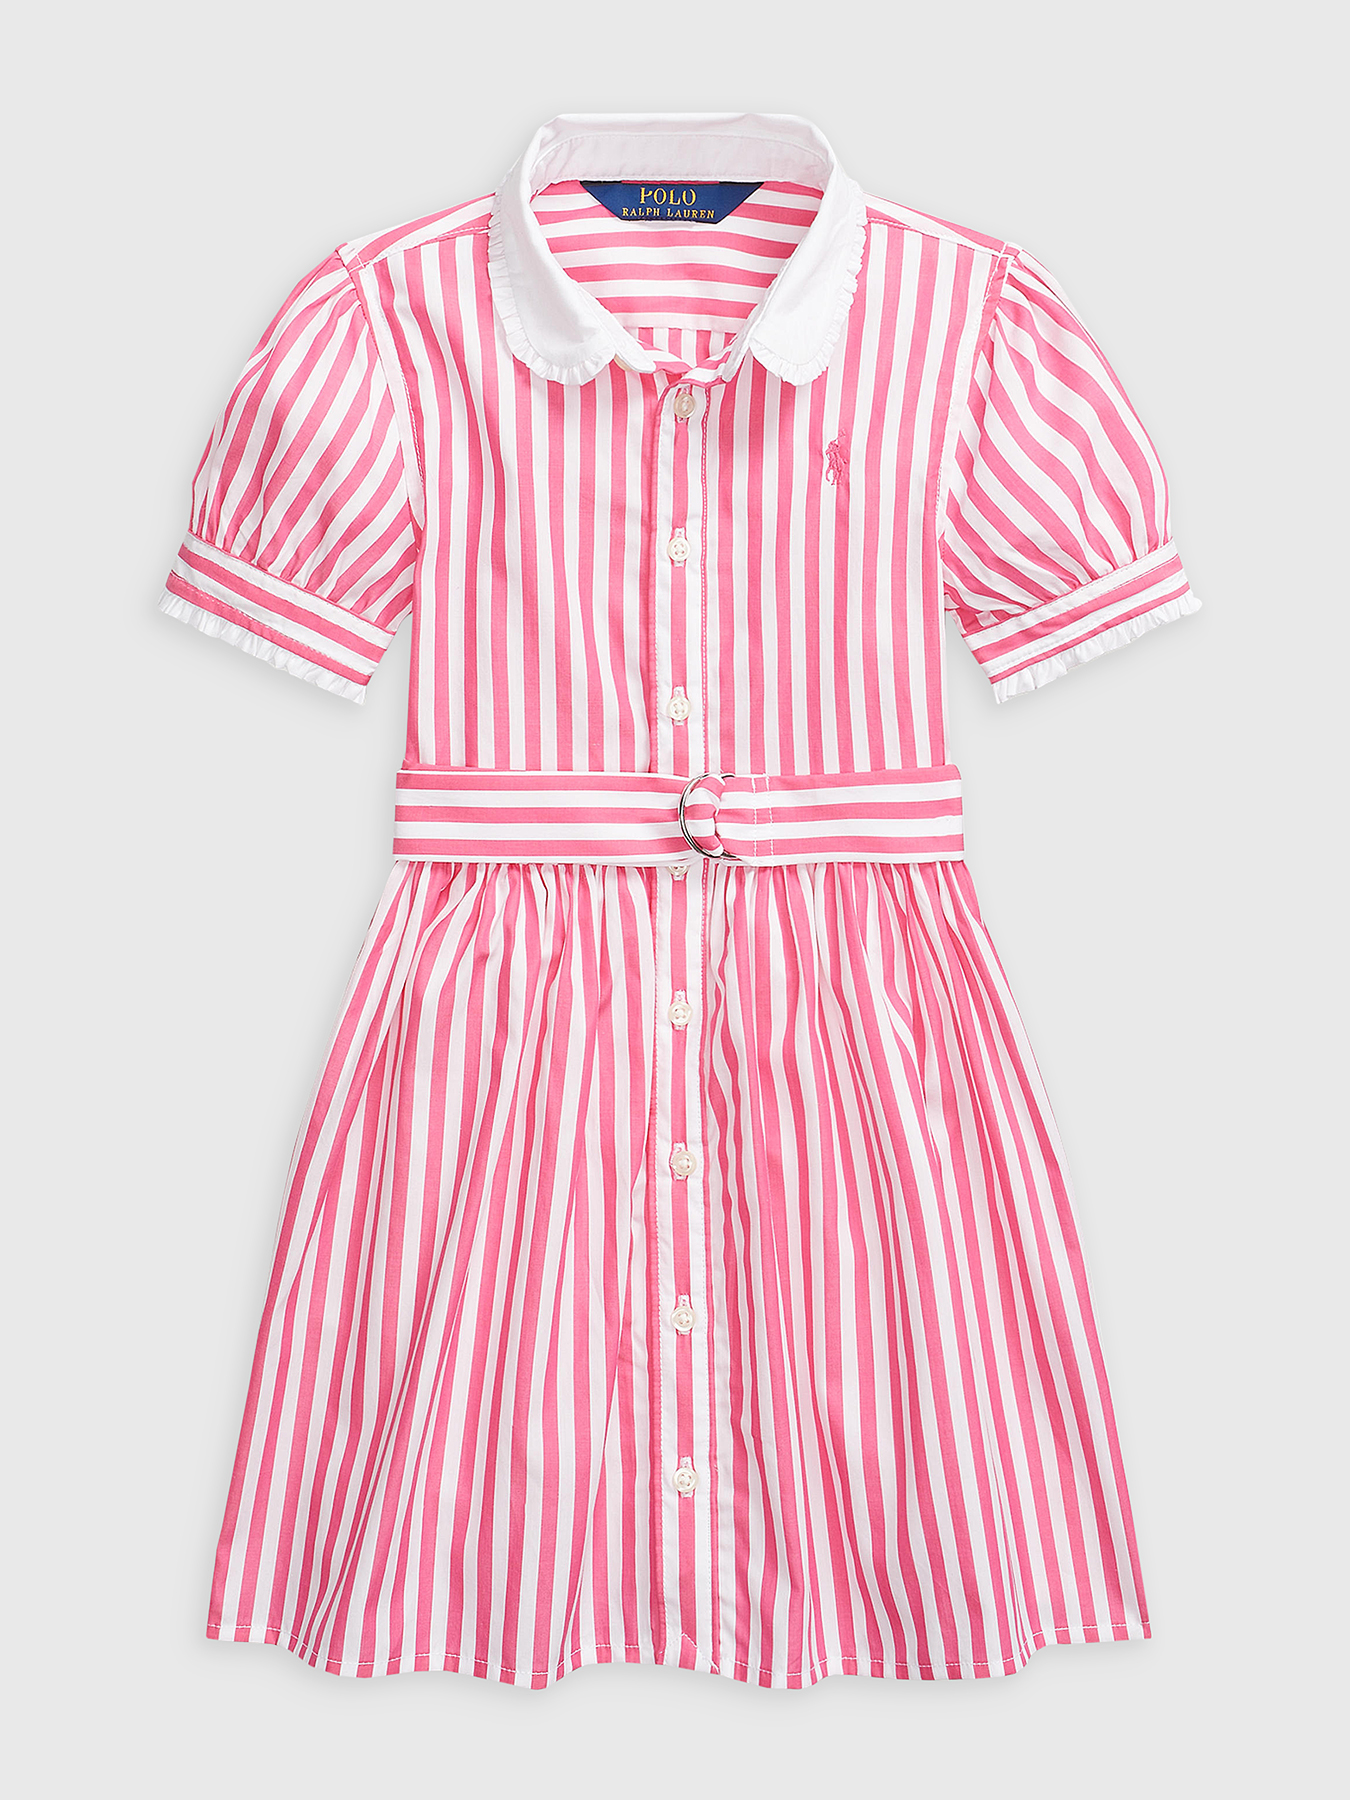 Striped dress with buttons brand POLO RALPH LAUREN —  /en